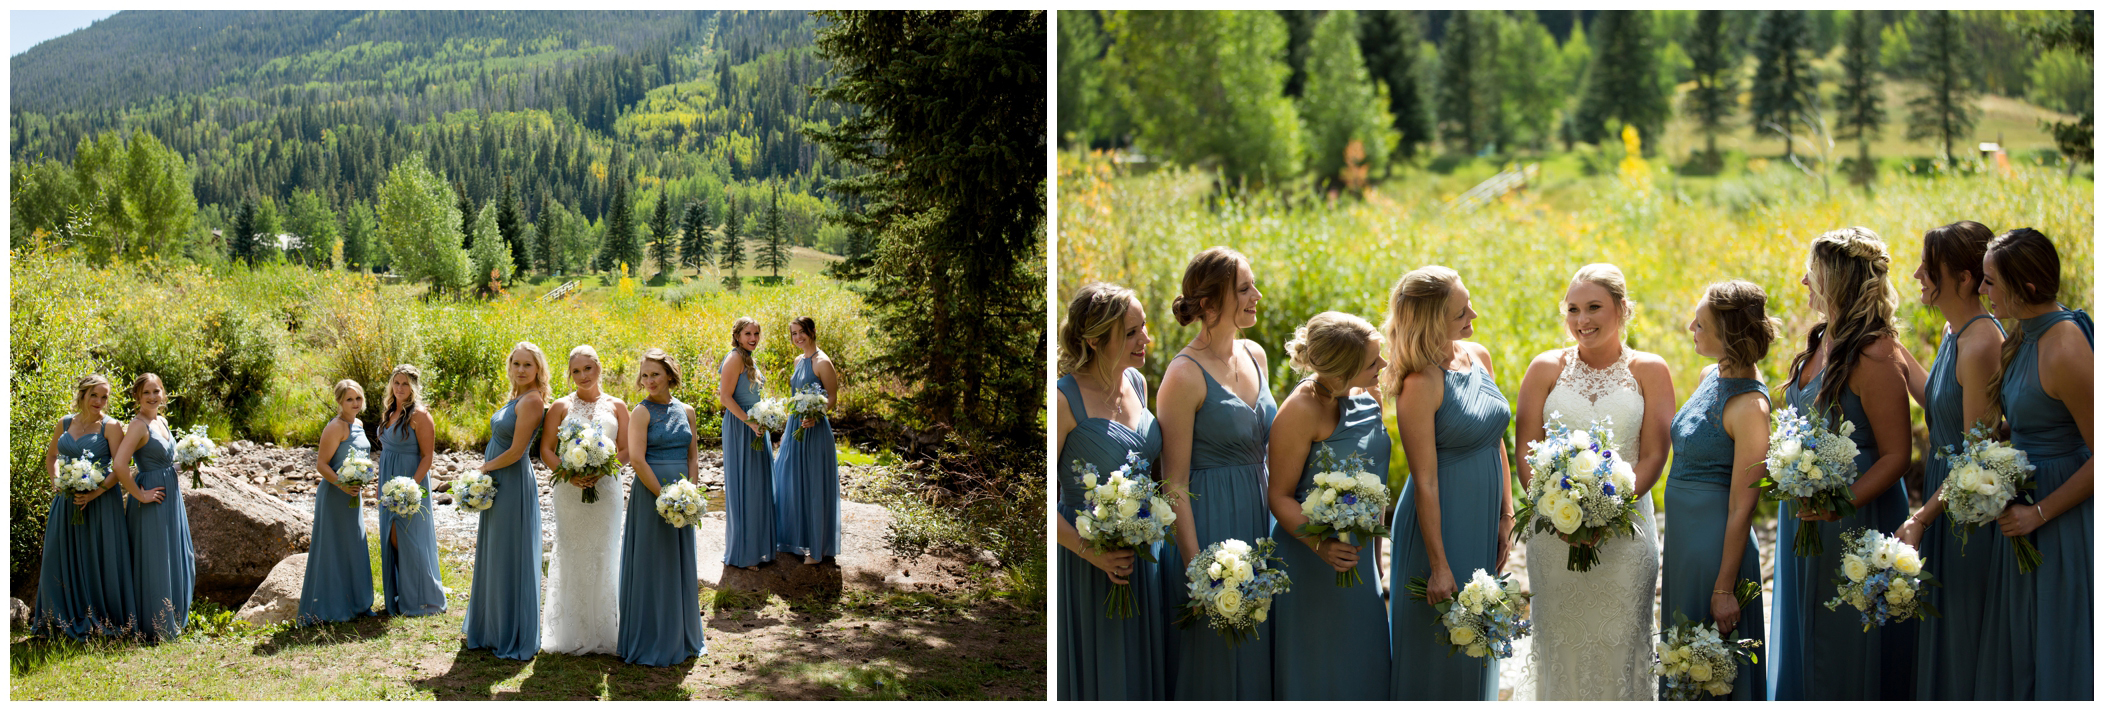 long blue bridesmaids dresses at Vail Colorado wedding